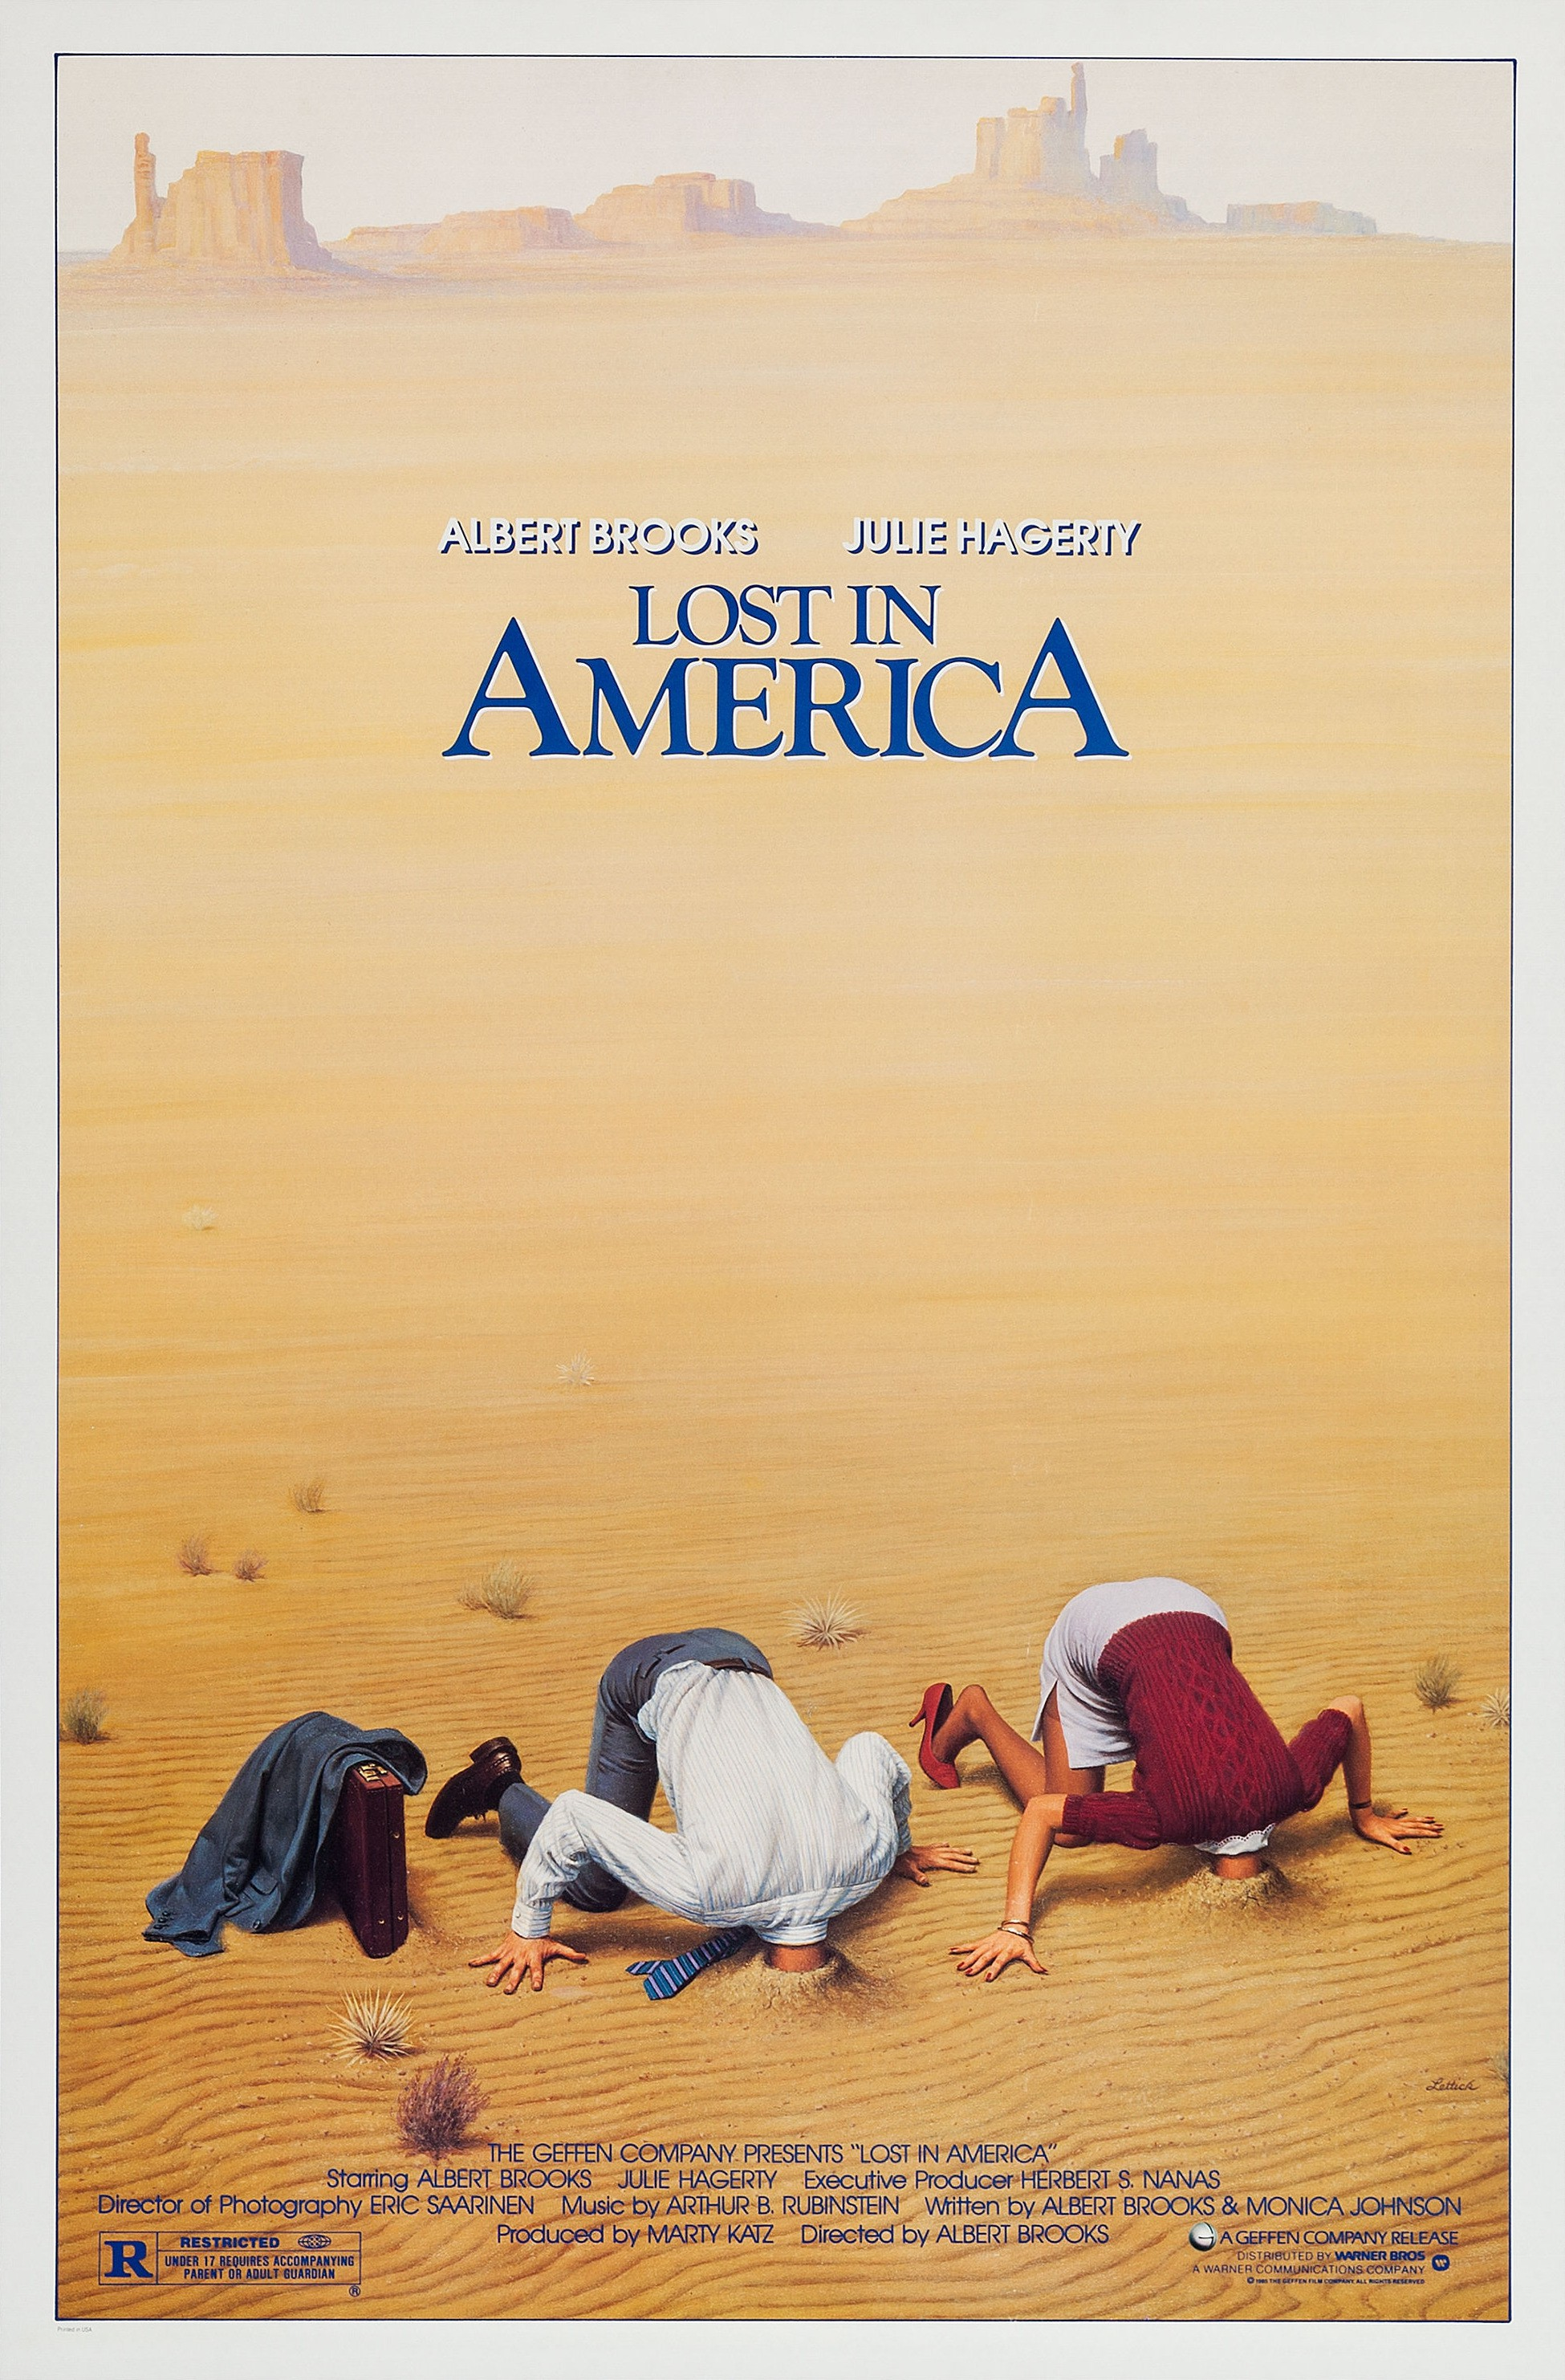 Lost in America Warner Bros image